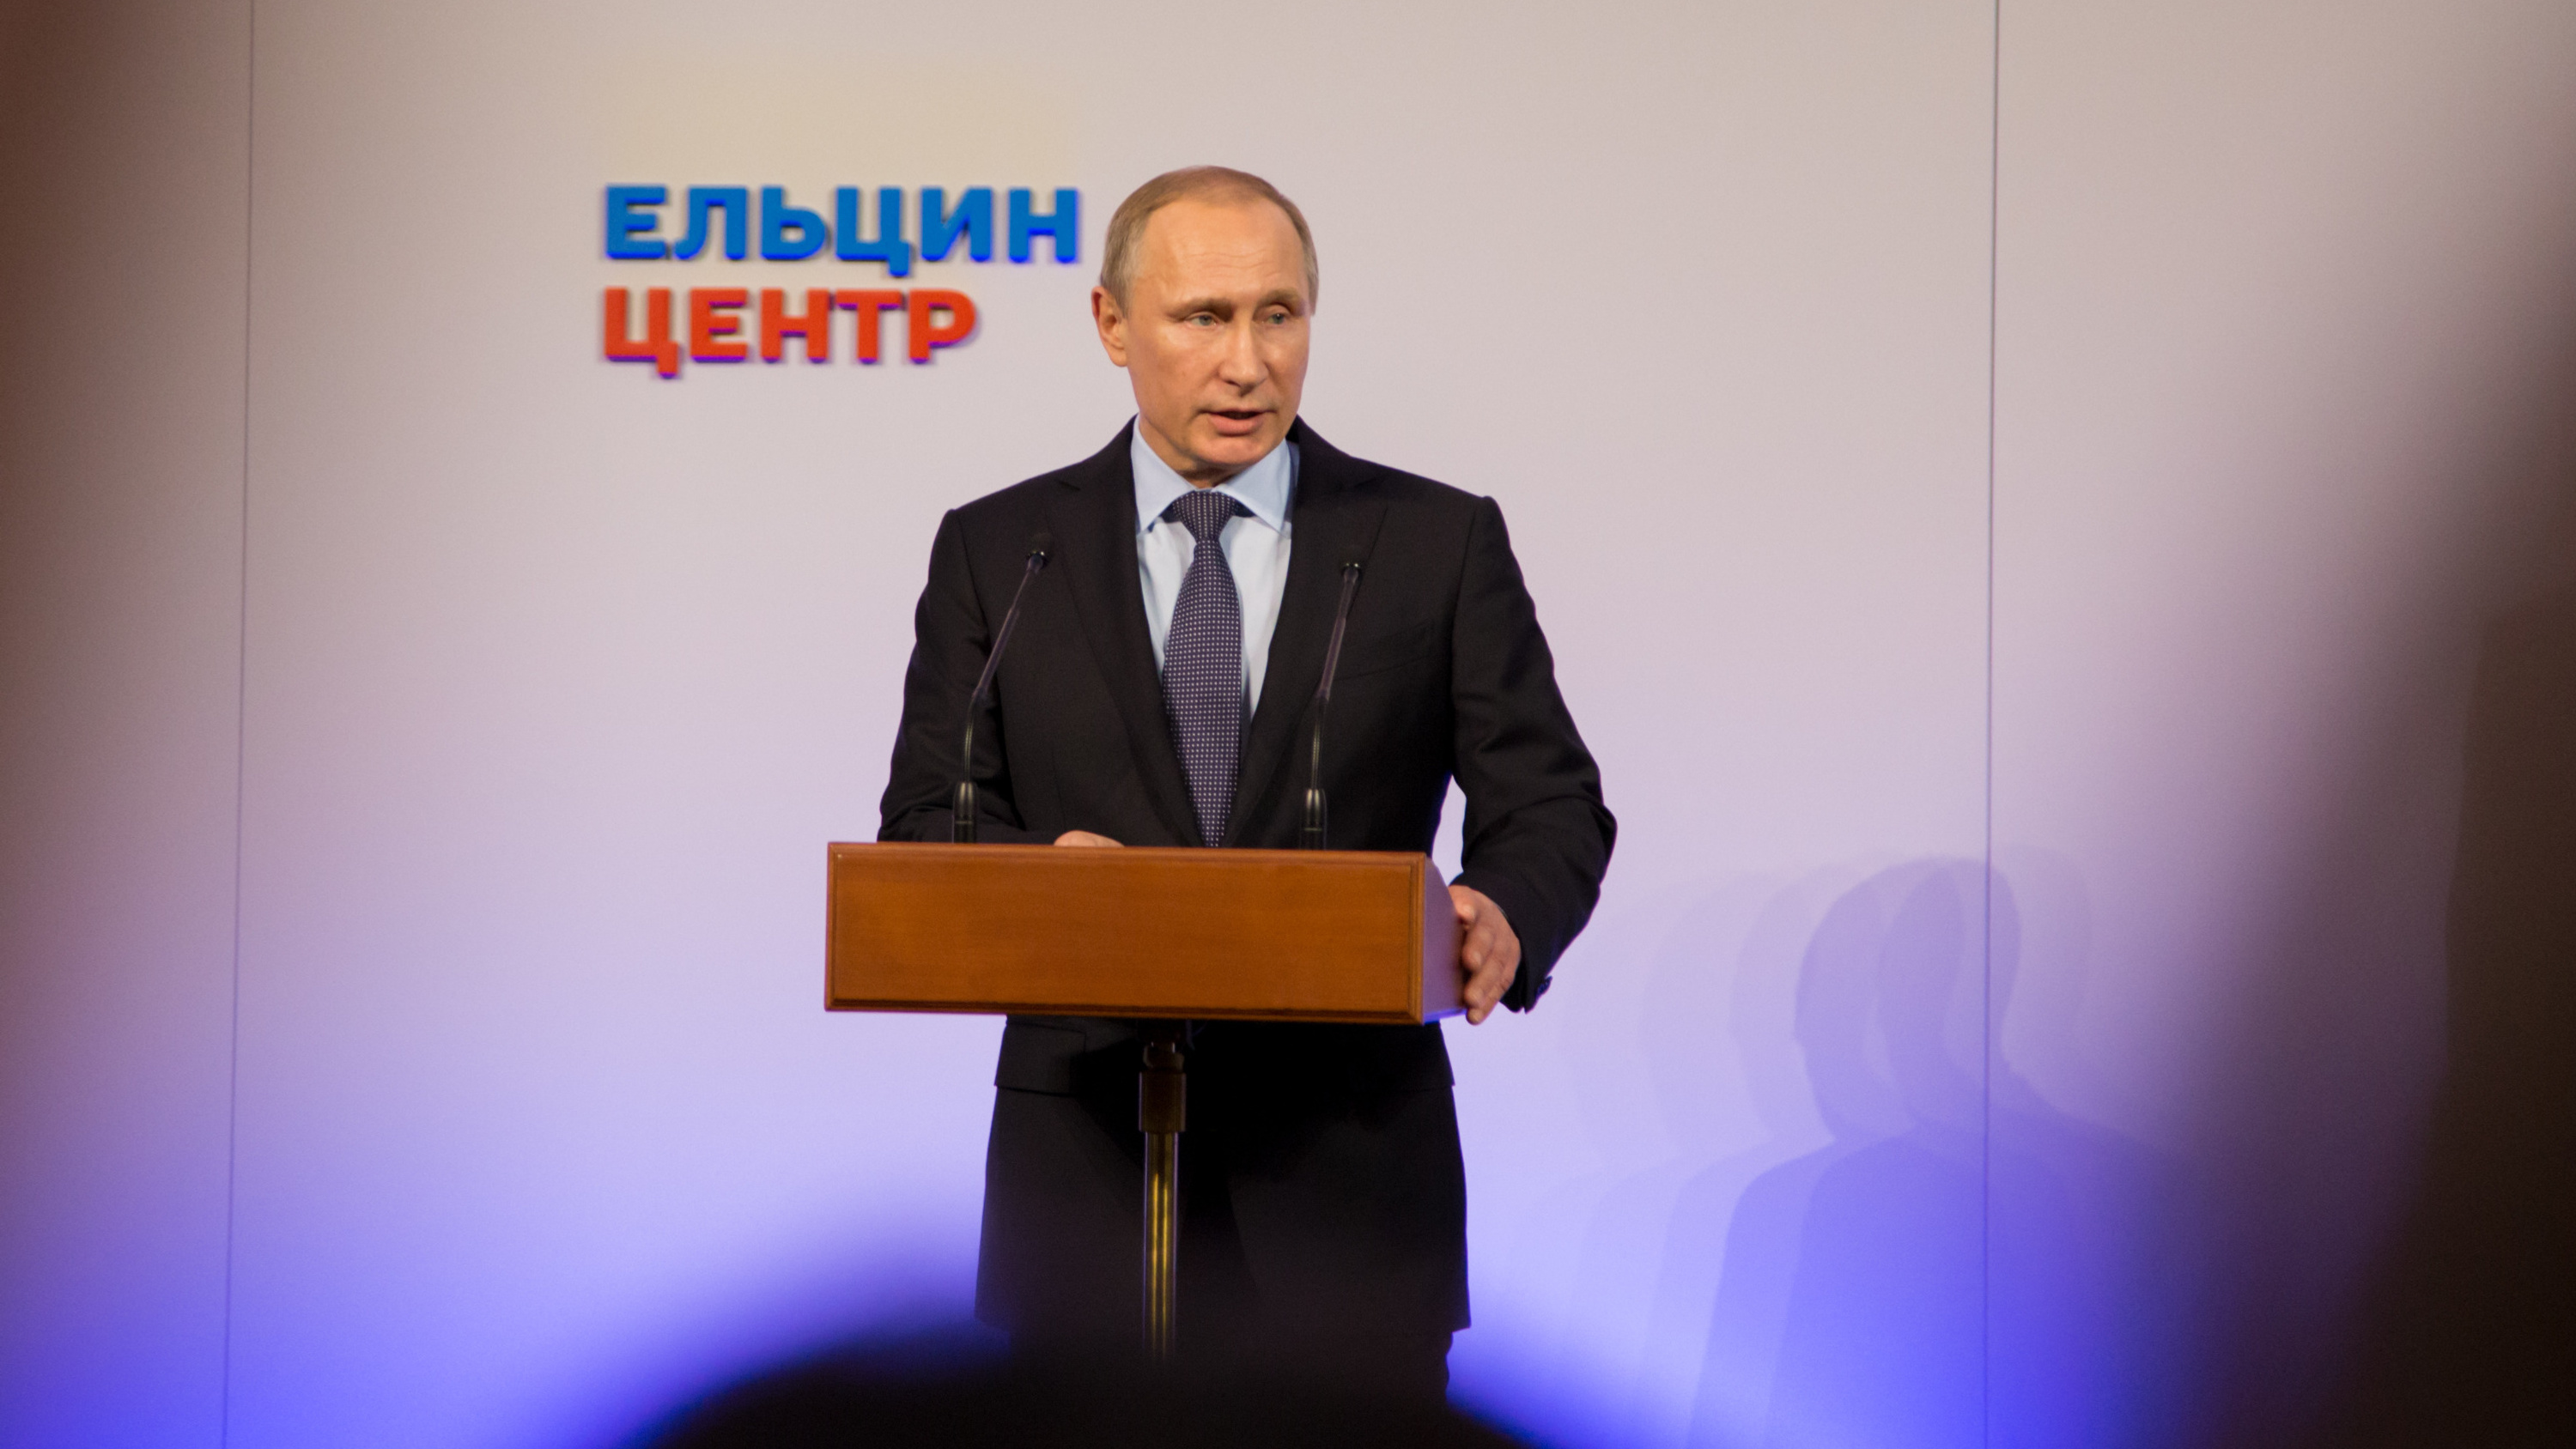 Стало известно, зачем Владимир Путин приедет в Екатеринбург